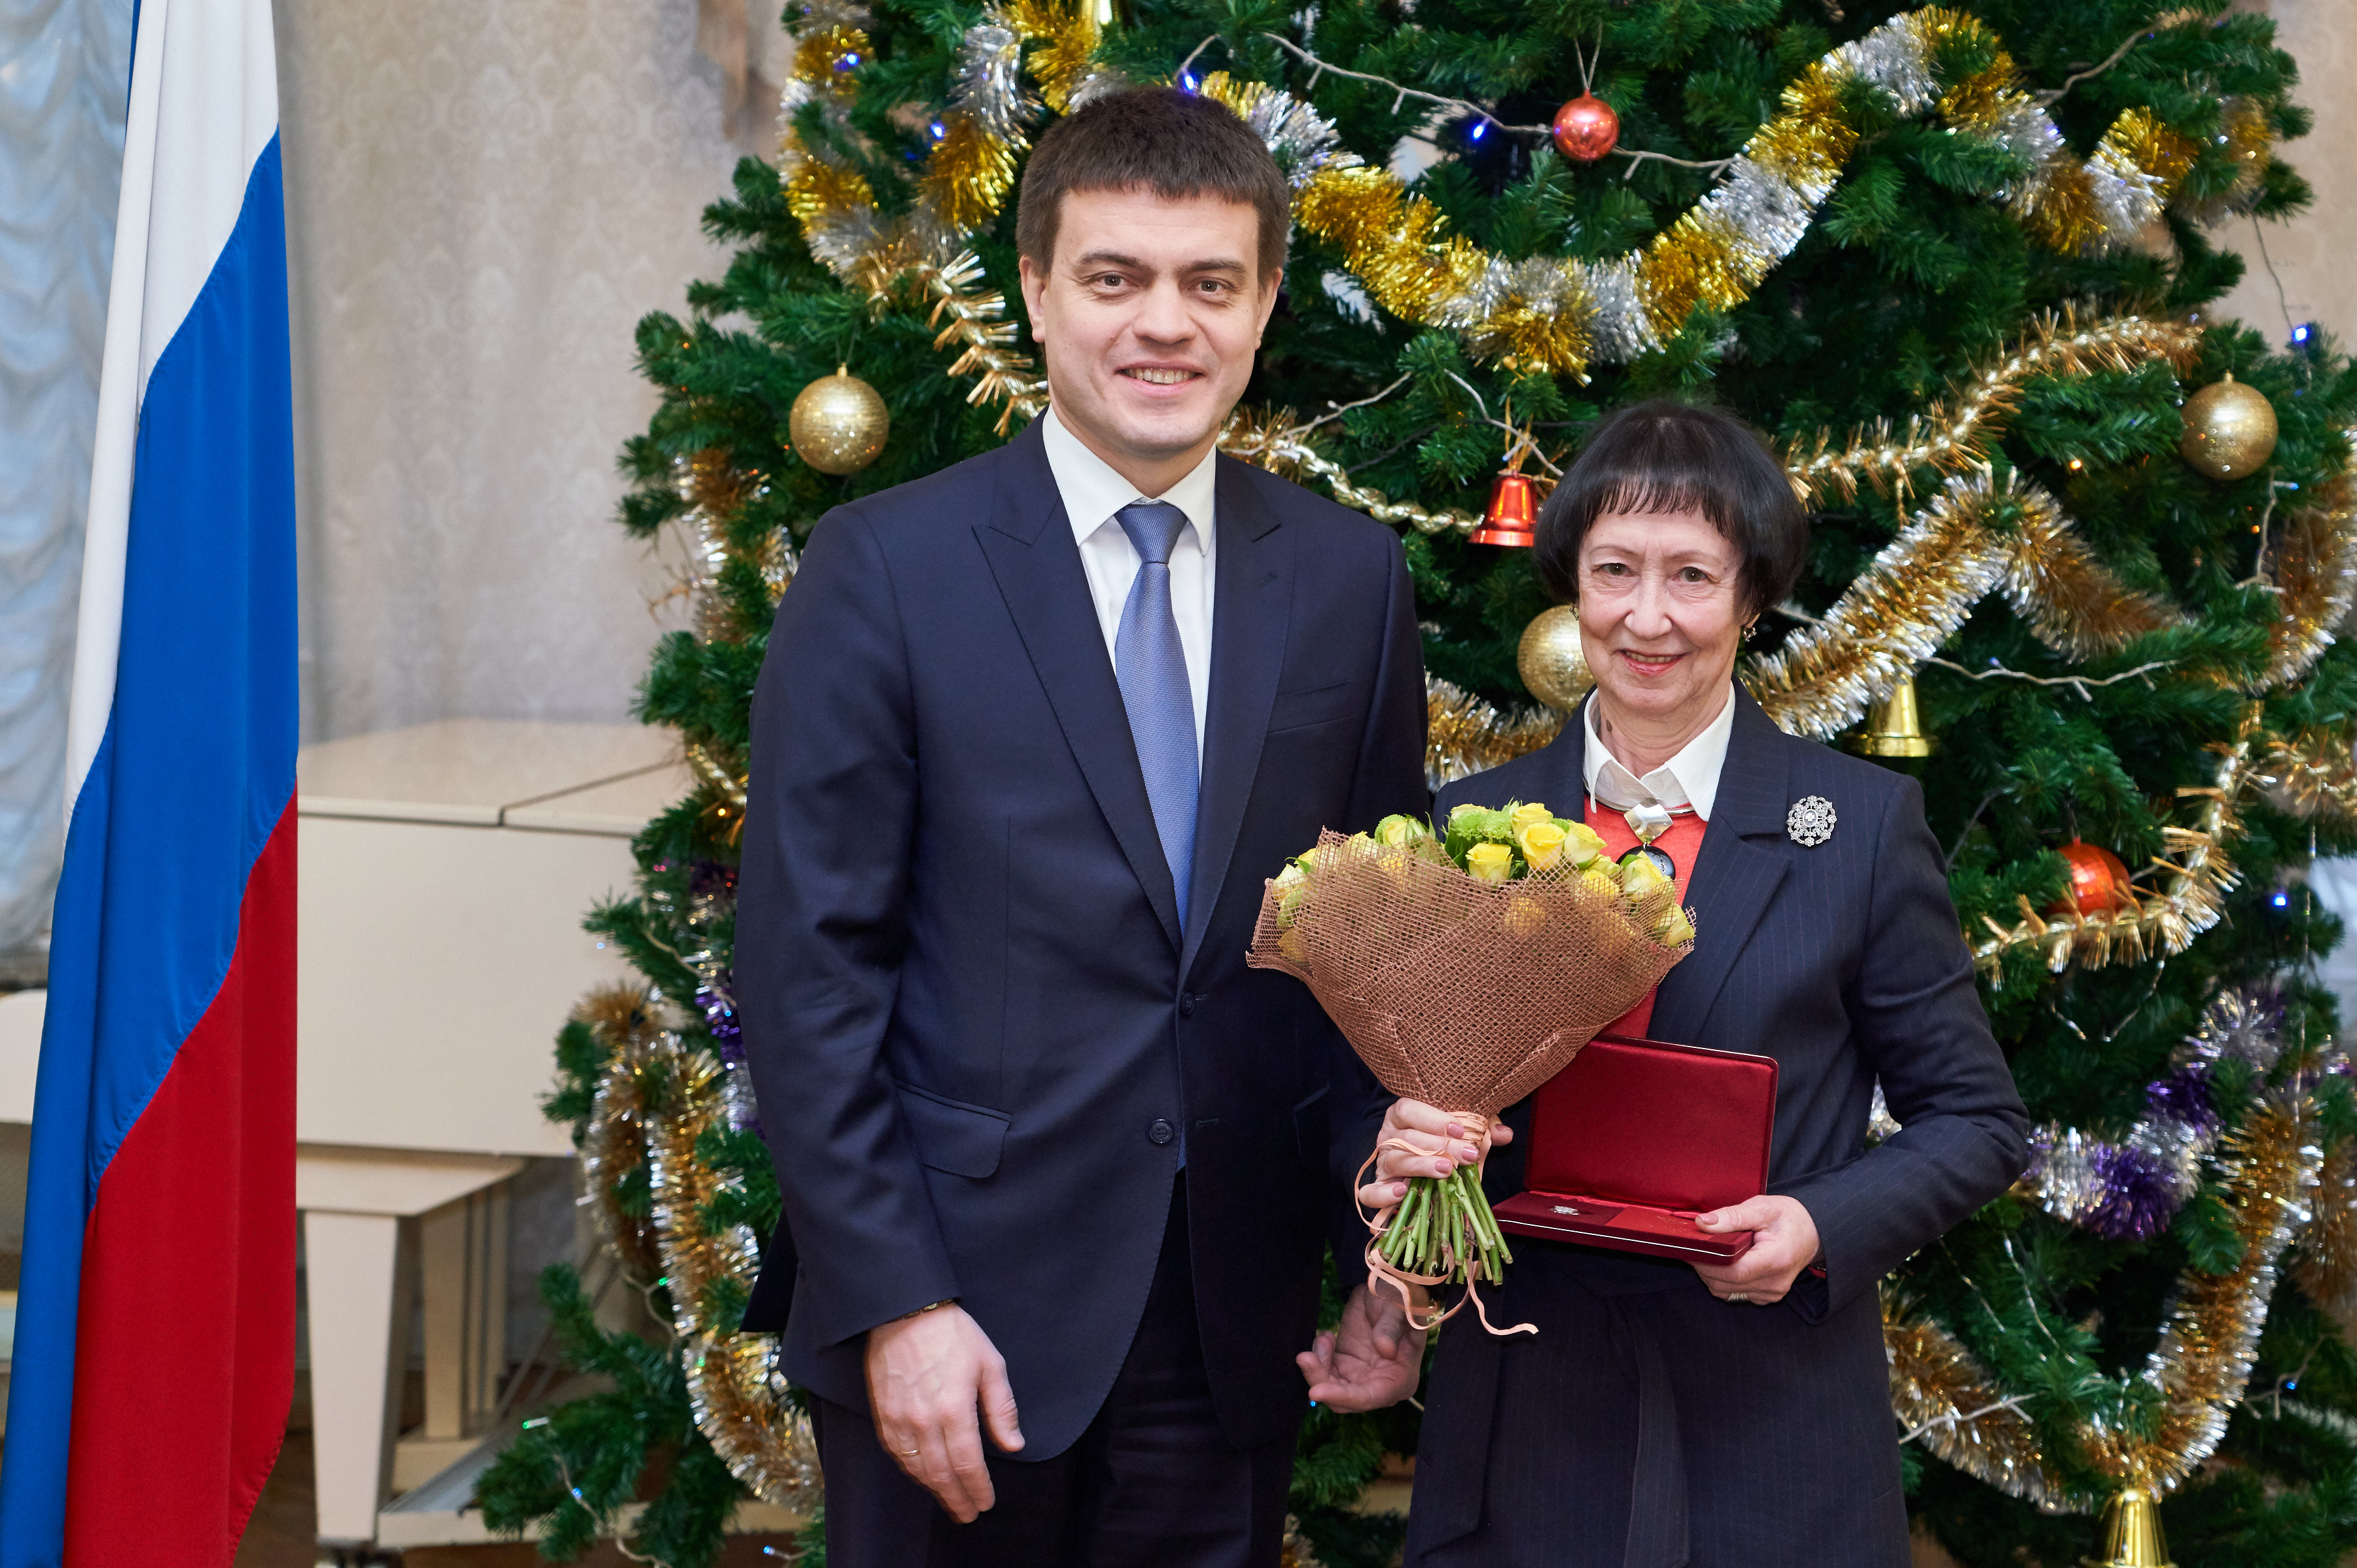 Элеоноре Кольцовой присвоено почетное звание «Заслуженный работник высшей школы Российской Федерации»